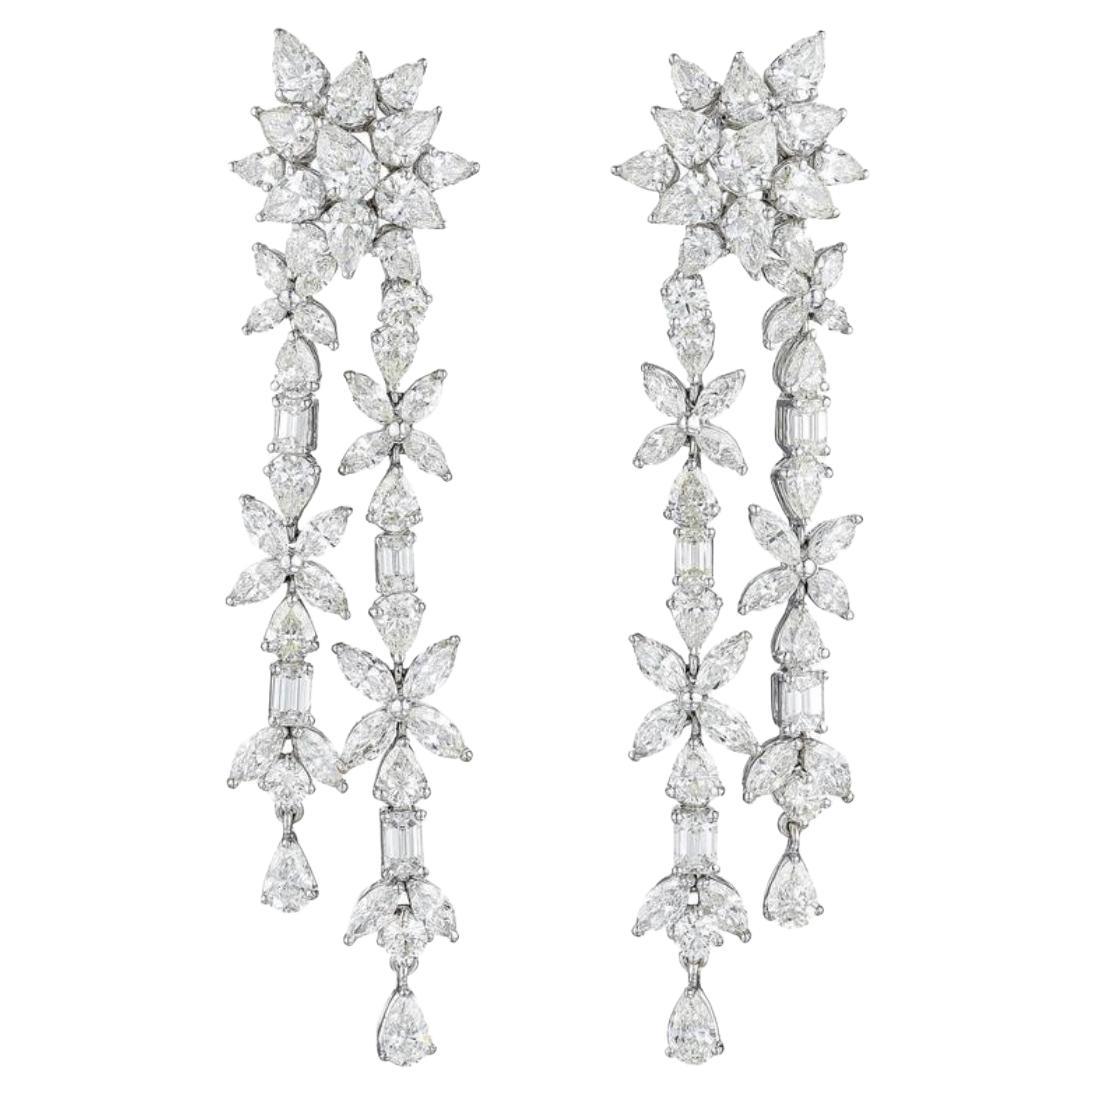 18.92 Carat White Fancy Cut Diamond Chandelier Earrings In 18K White Gold.  For Sale